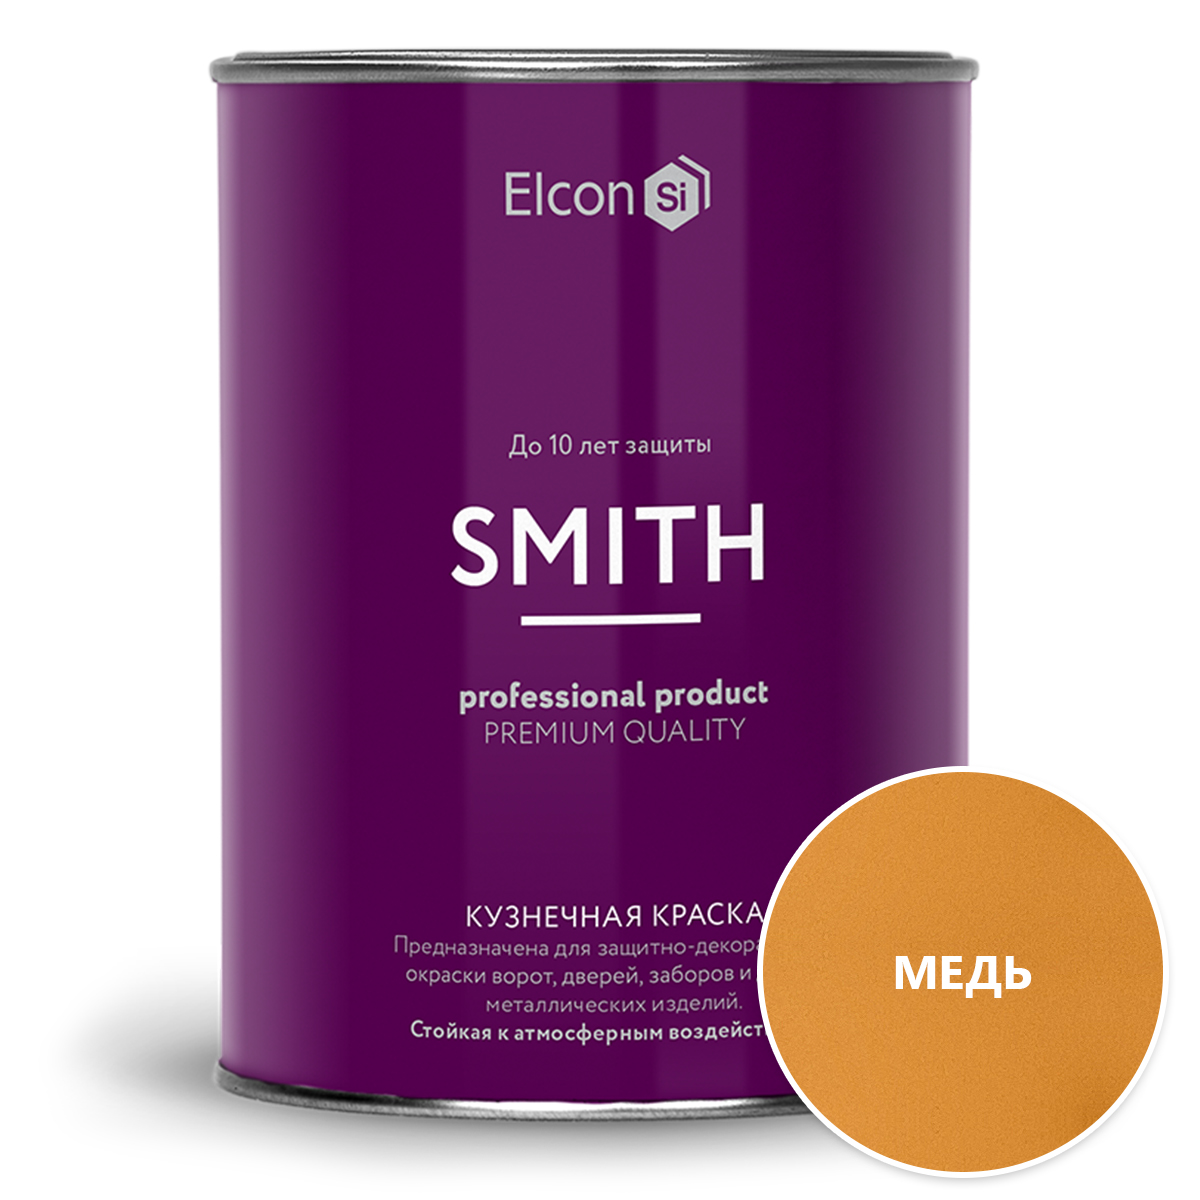 Кузнечная краска Elcon Smith медь (0.8 кг)